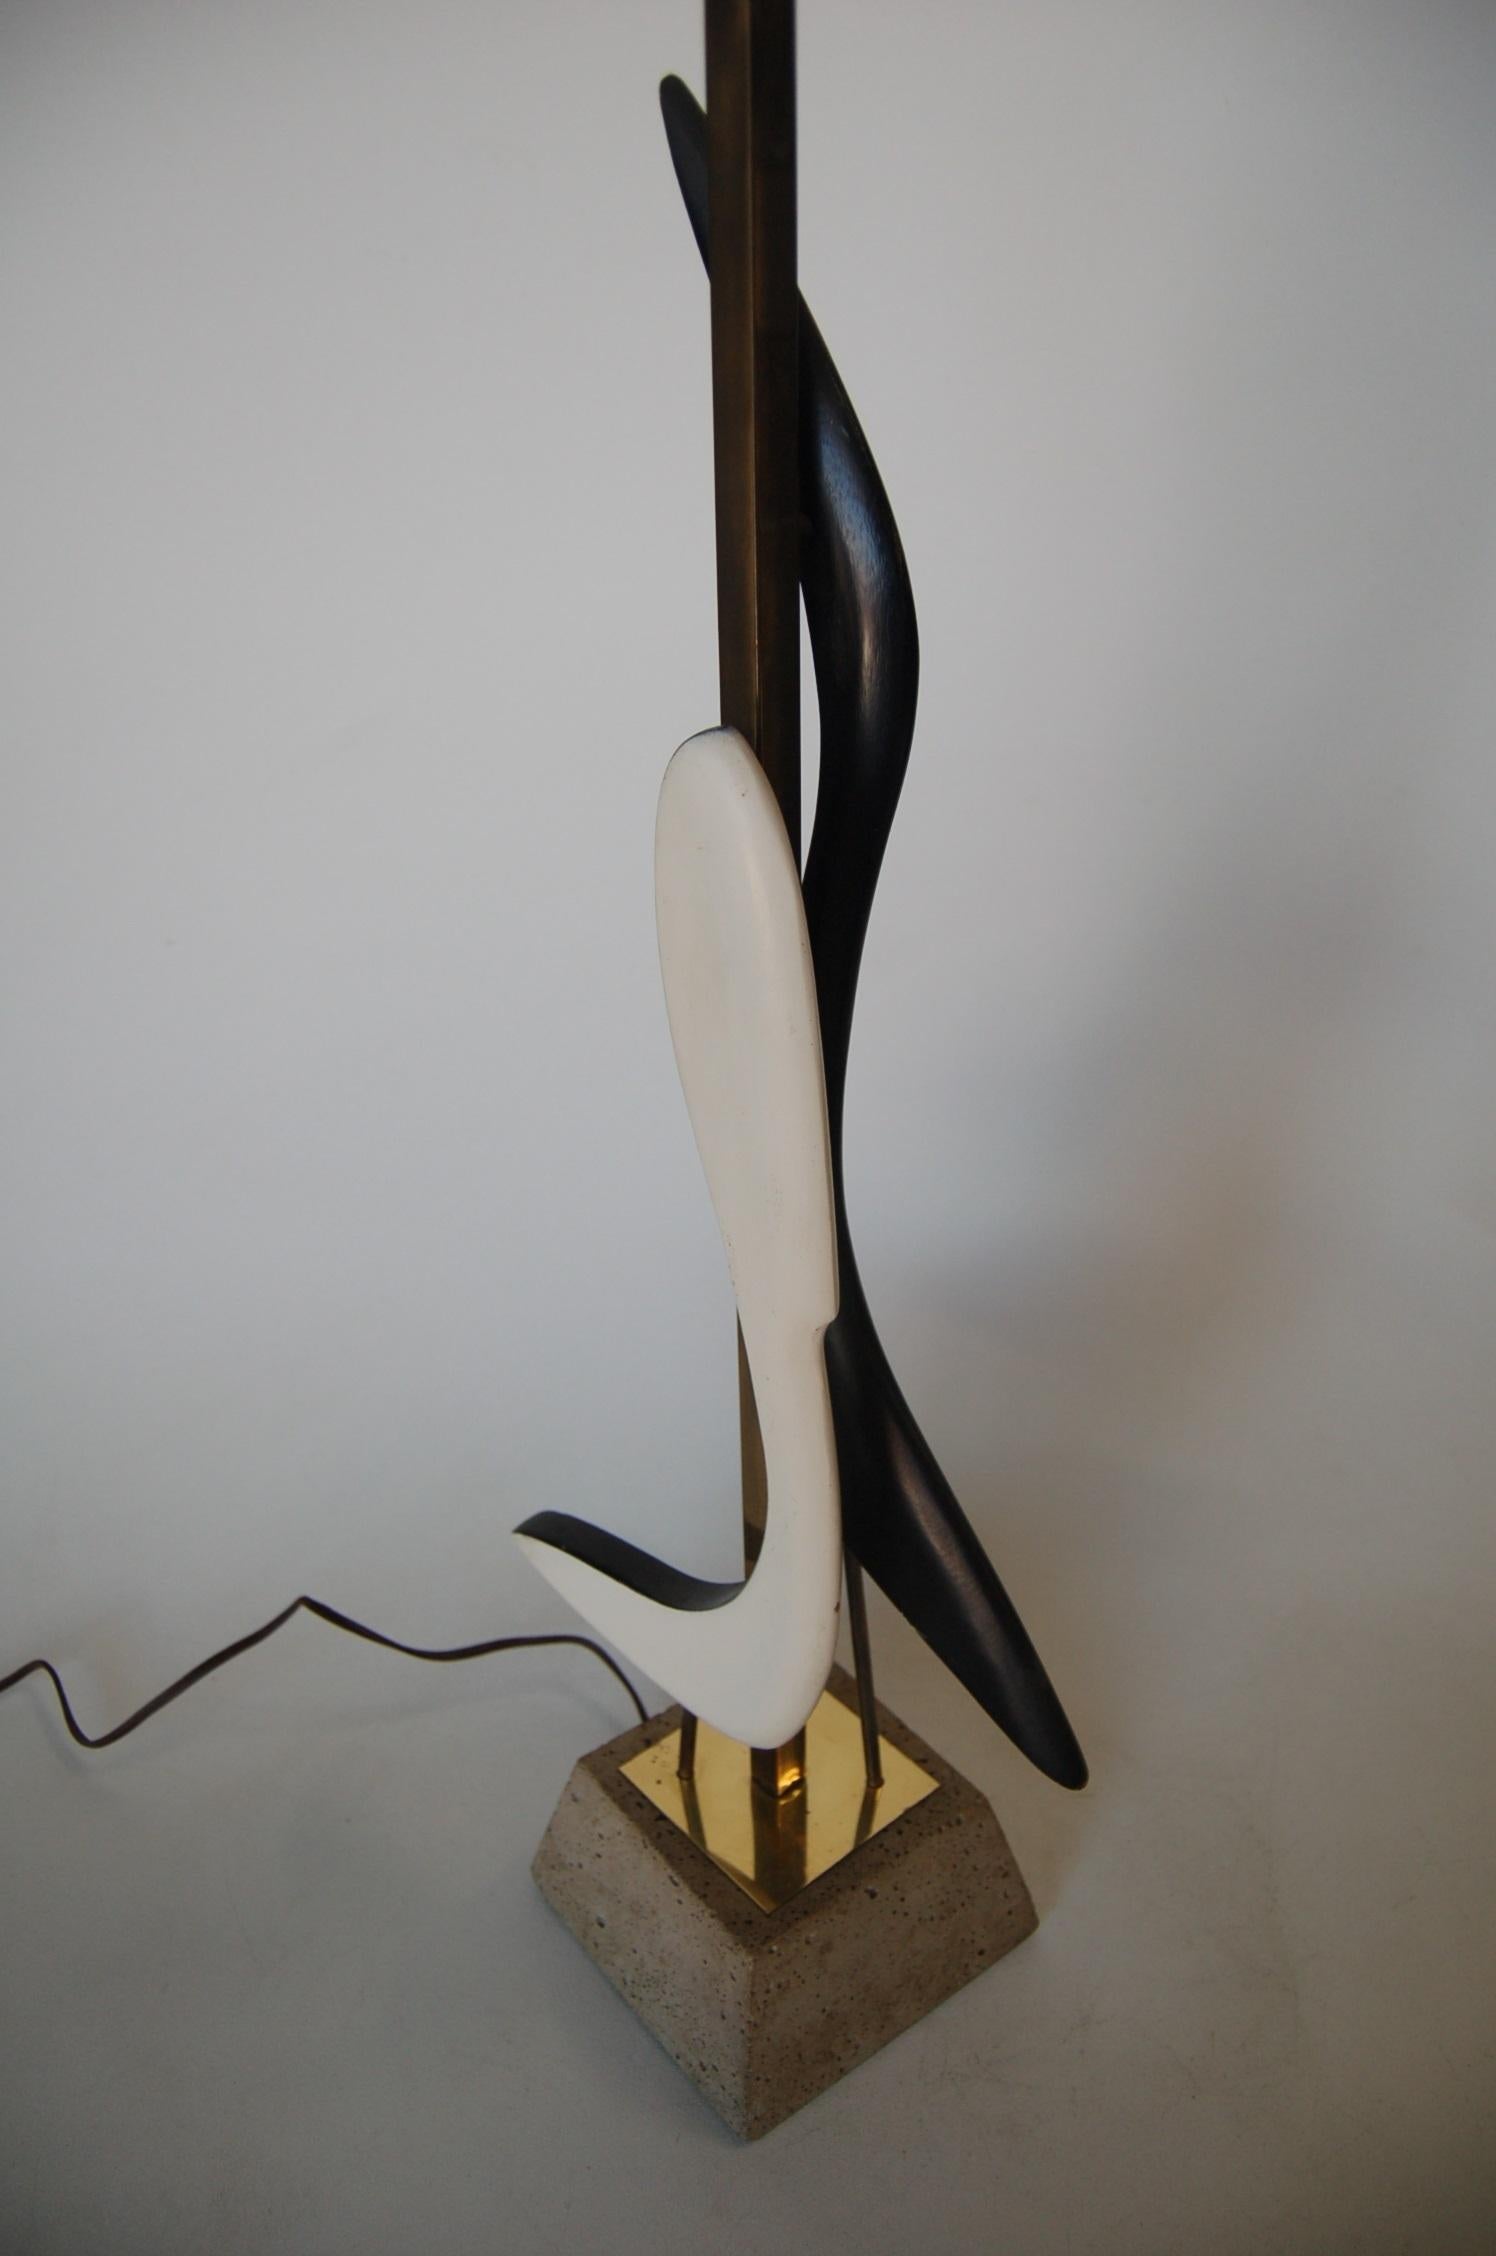 Lampe de table sculpturale abstraite noire et blanche, de style moderne du milieu du siècle, sur une base en béton avec garniture en laiton.

Mesures : 9